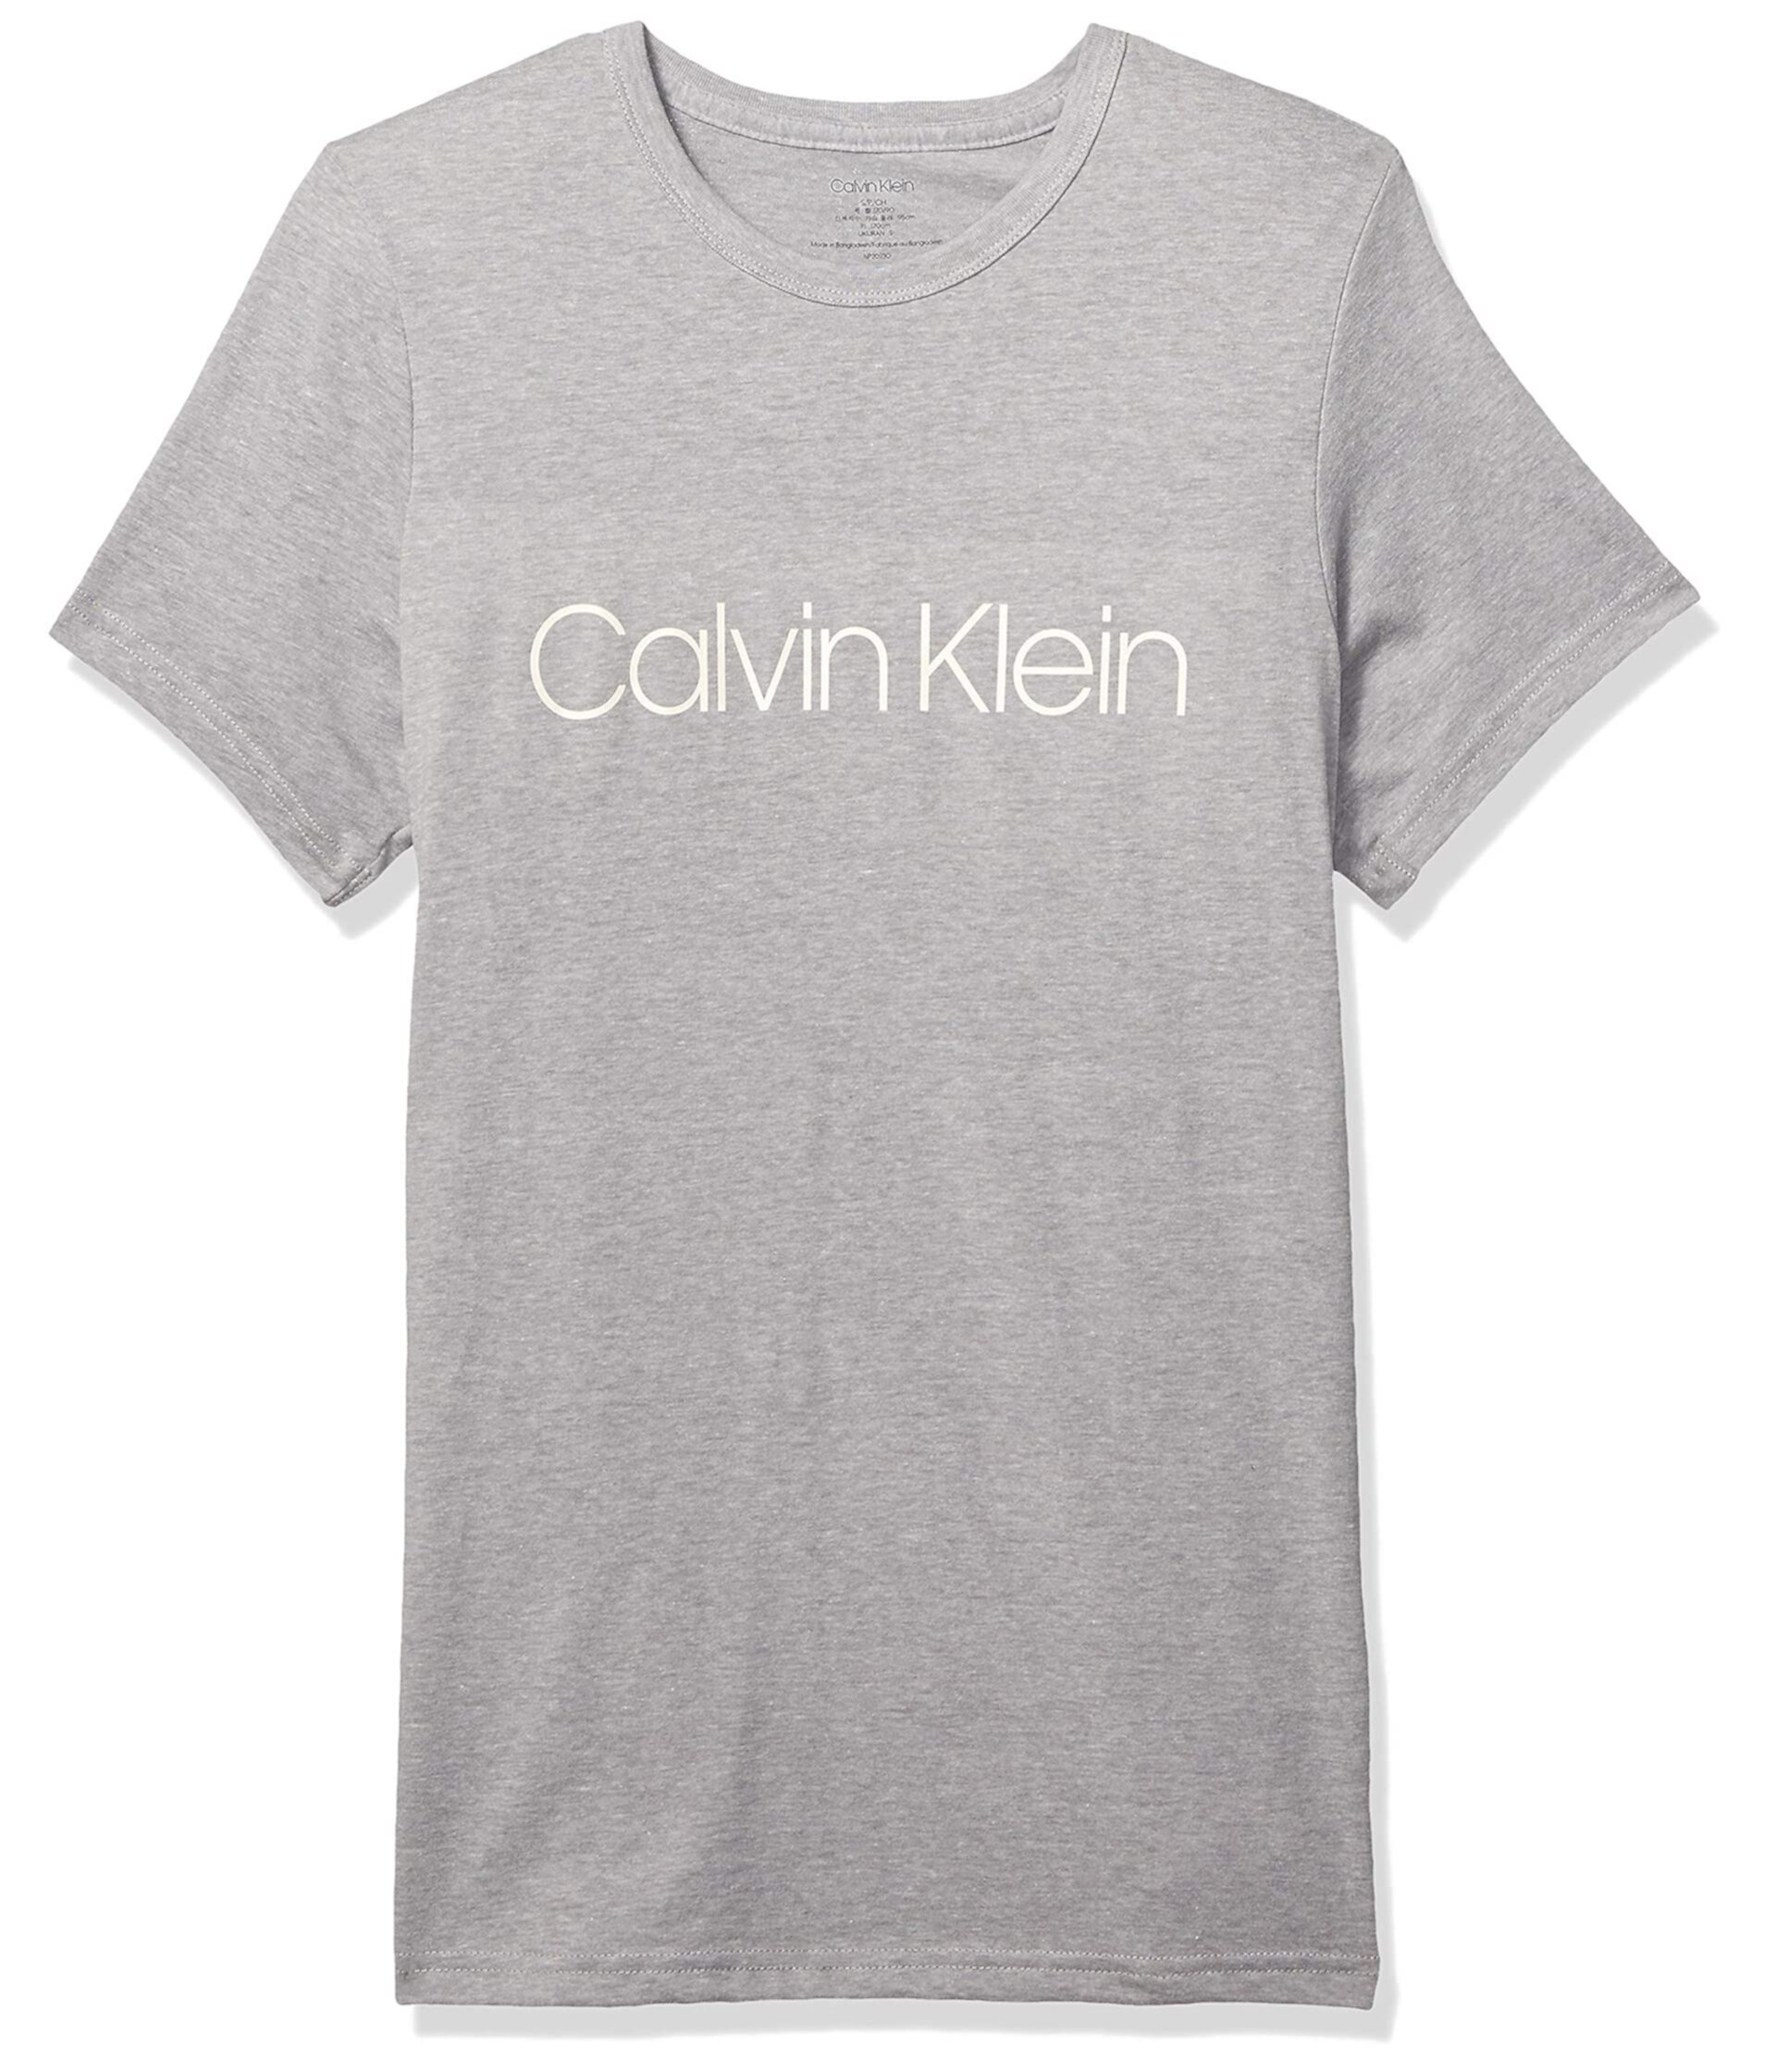 Футболка Ck Chill Lounge с логотипом Calvin Klein